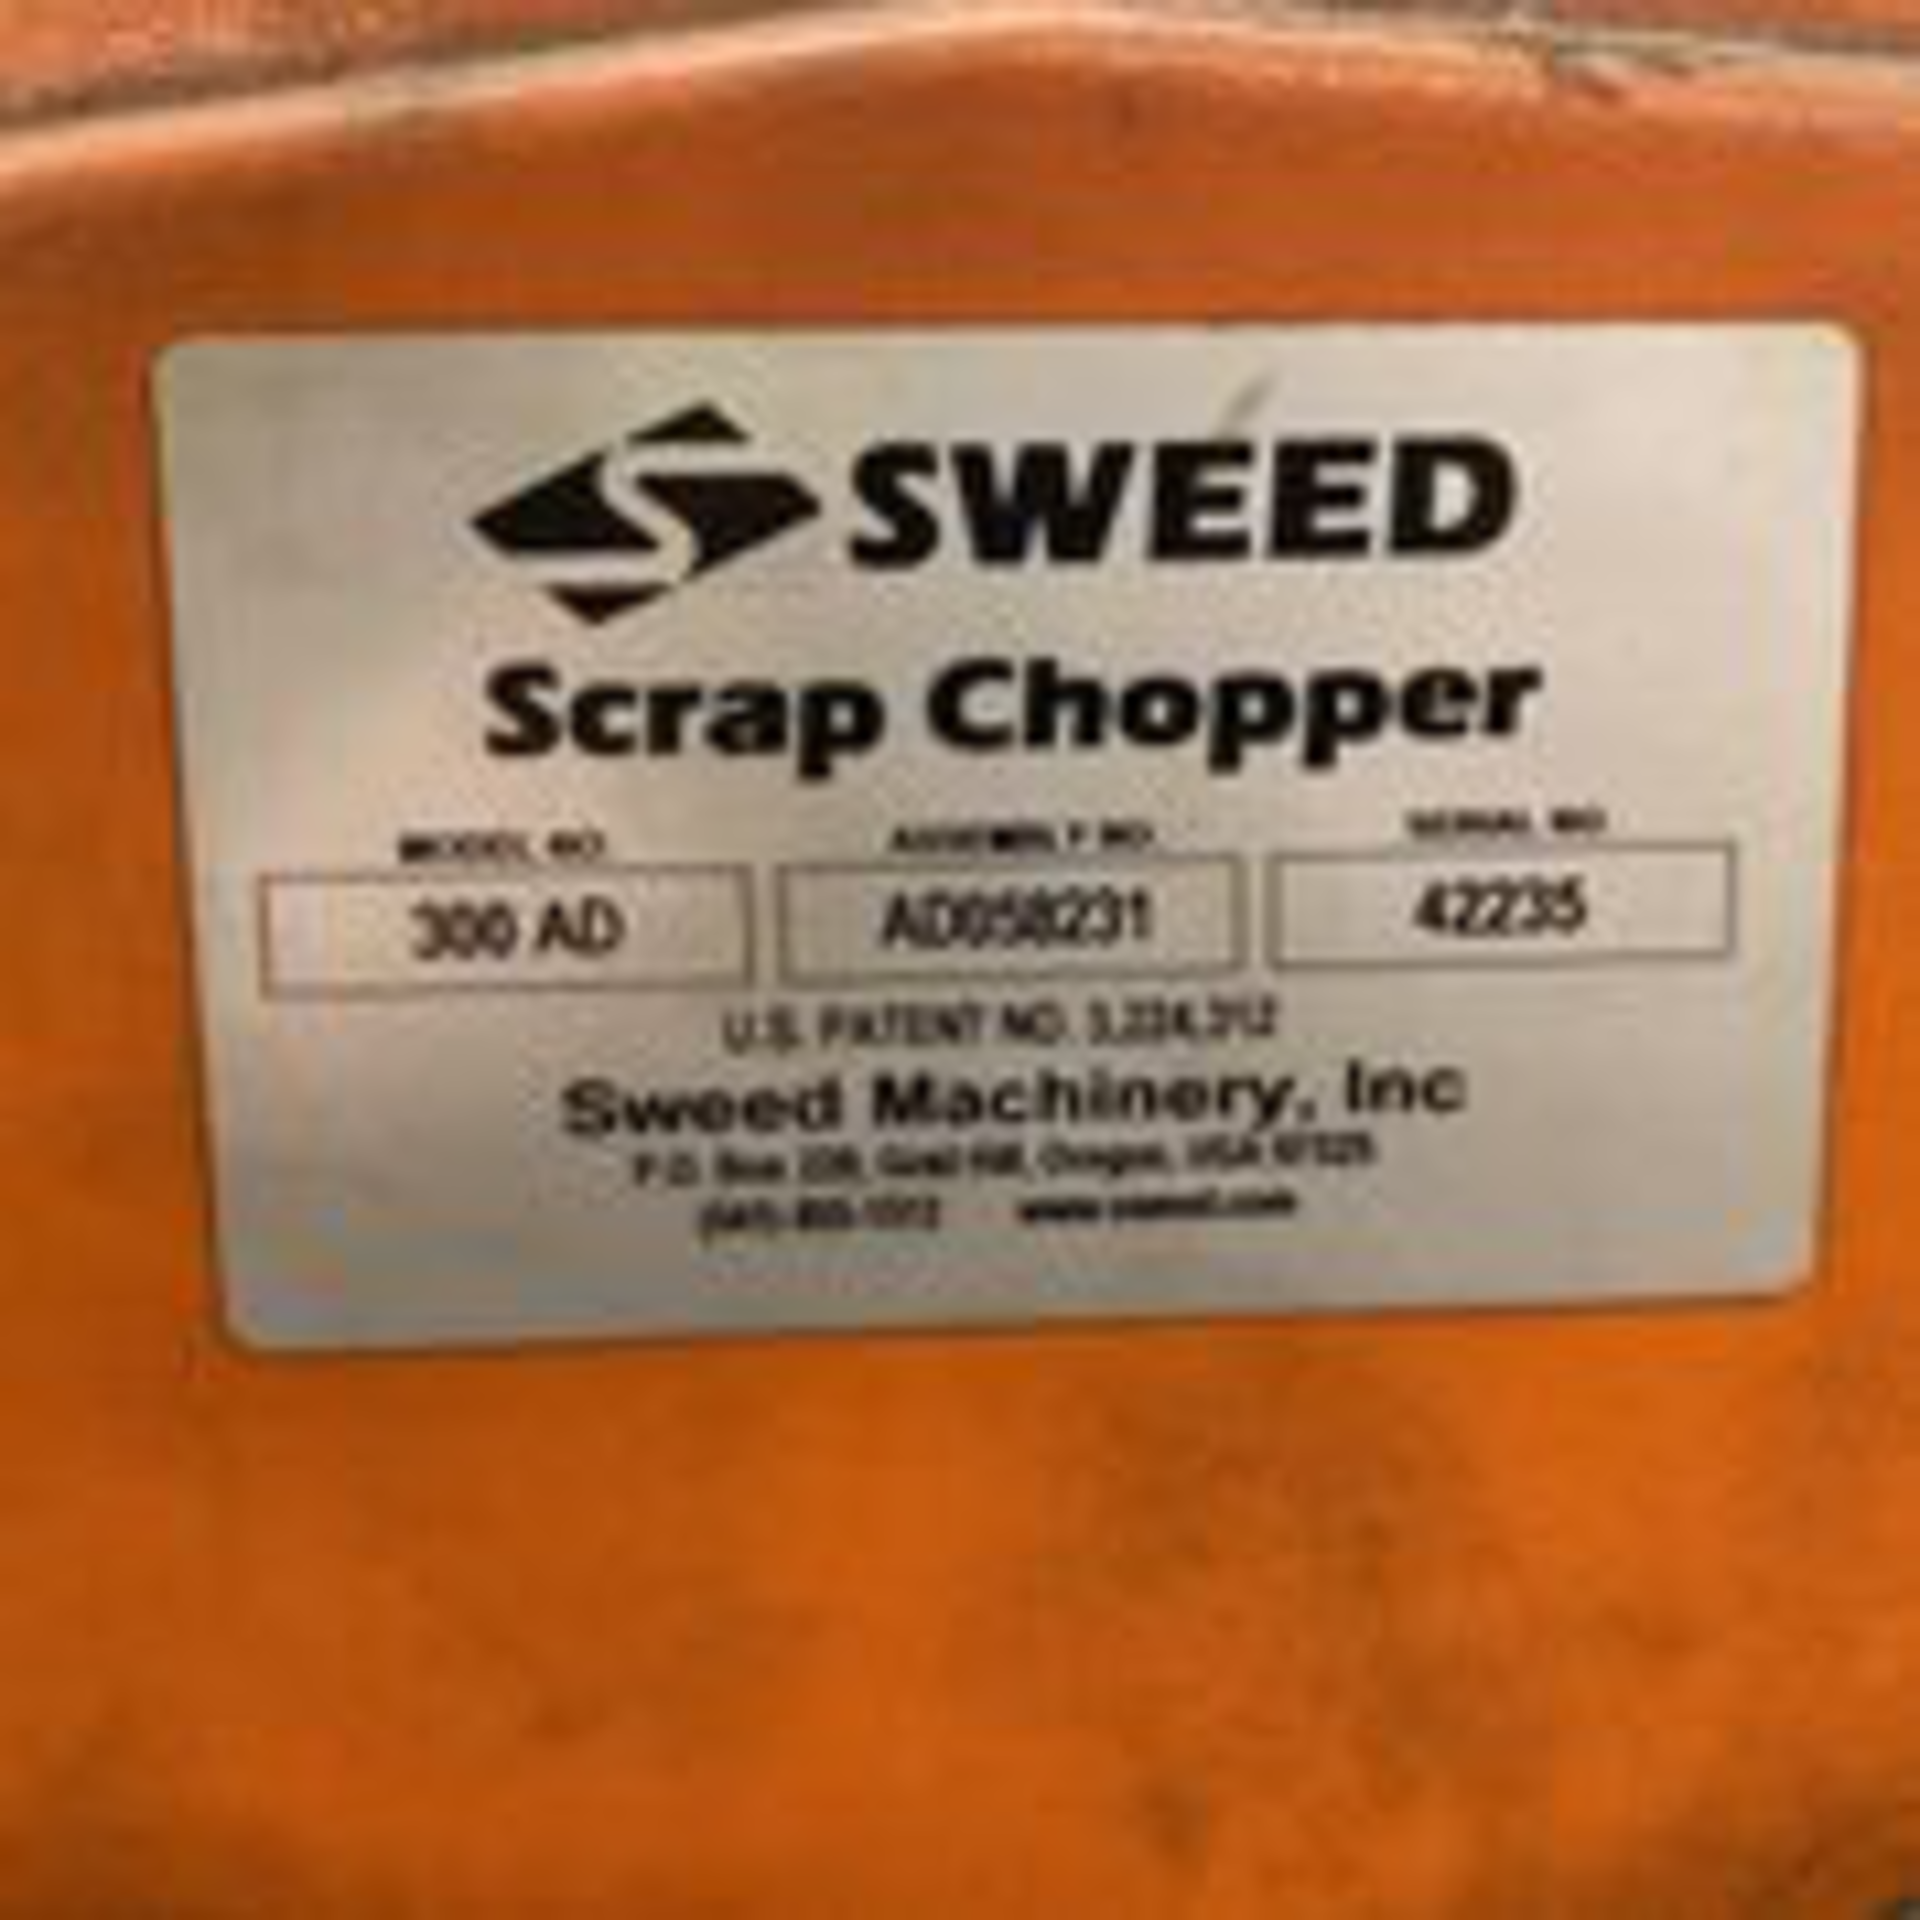 Sweed Scrap Chopper Model 300AD S/N 42235. LOADING FEE $100 - Image 2 of 5